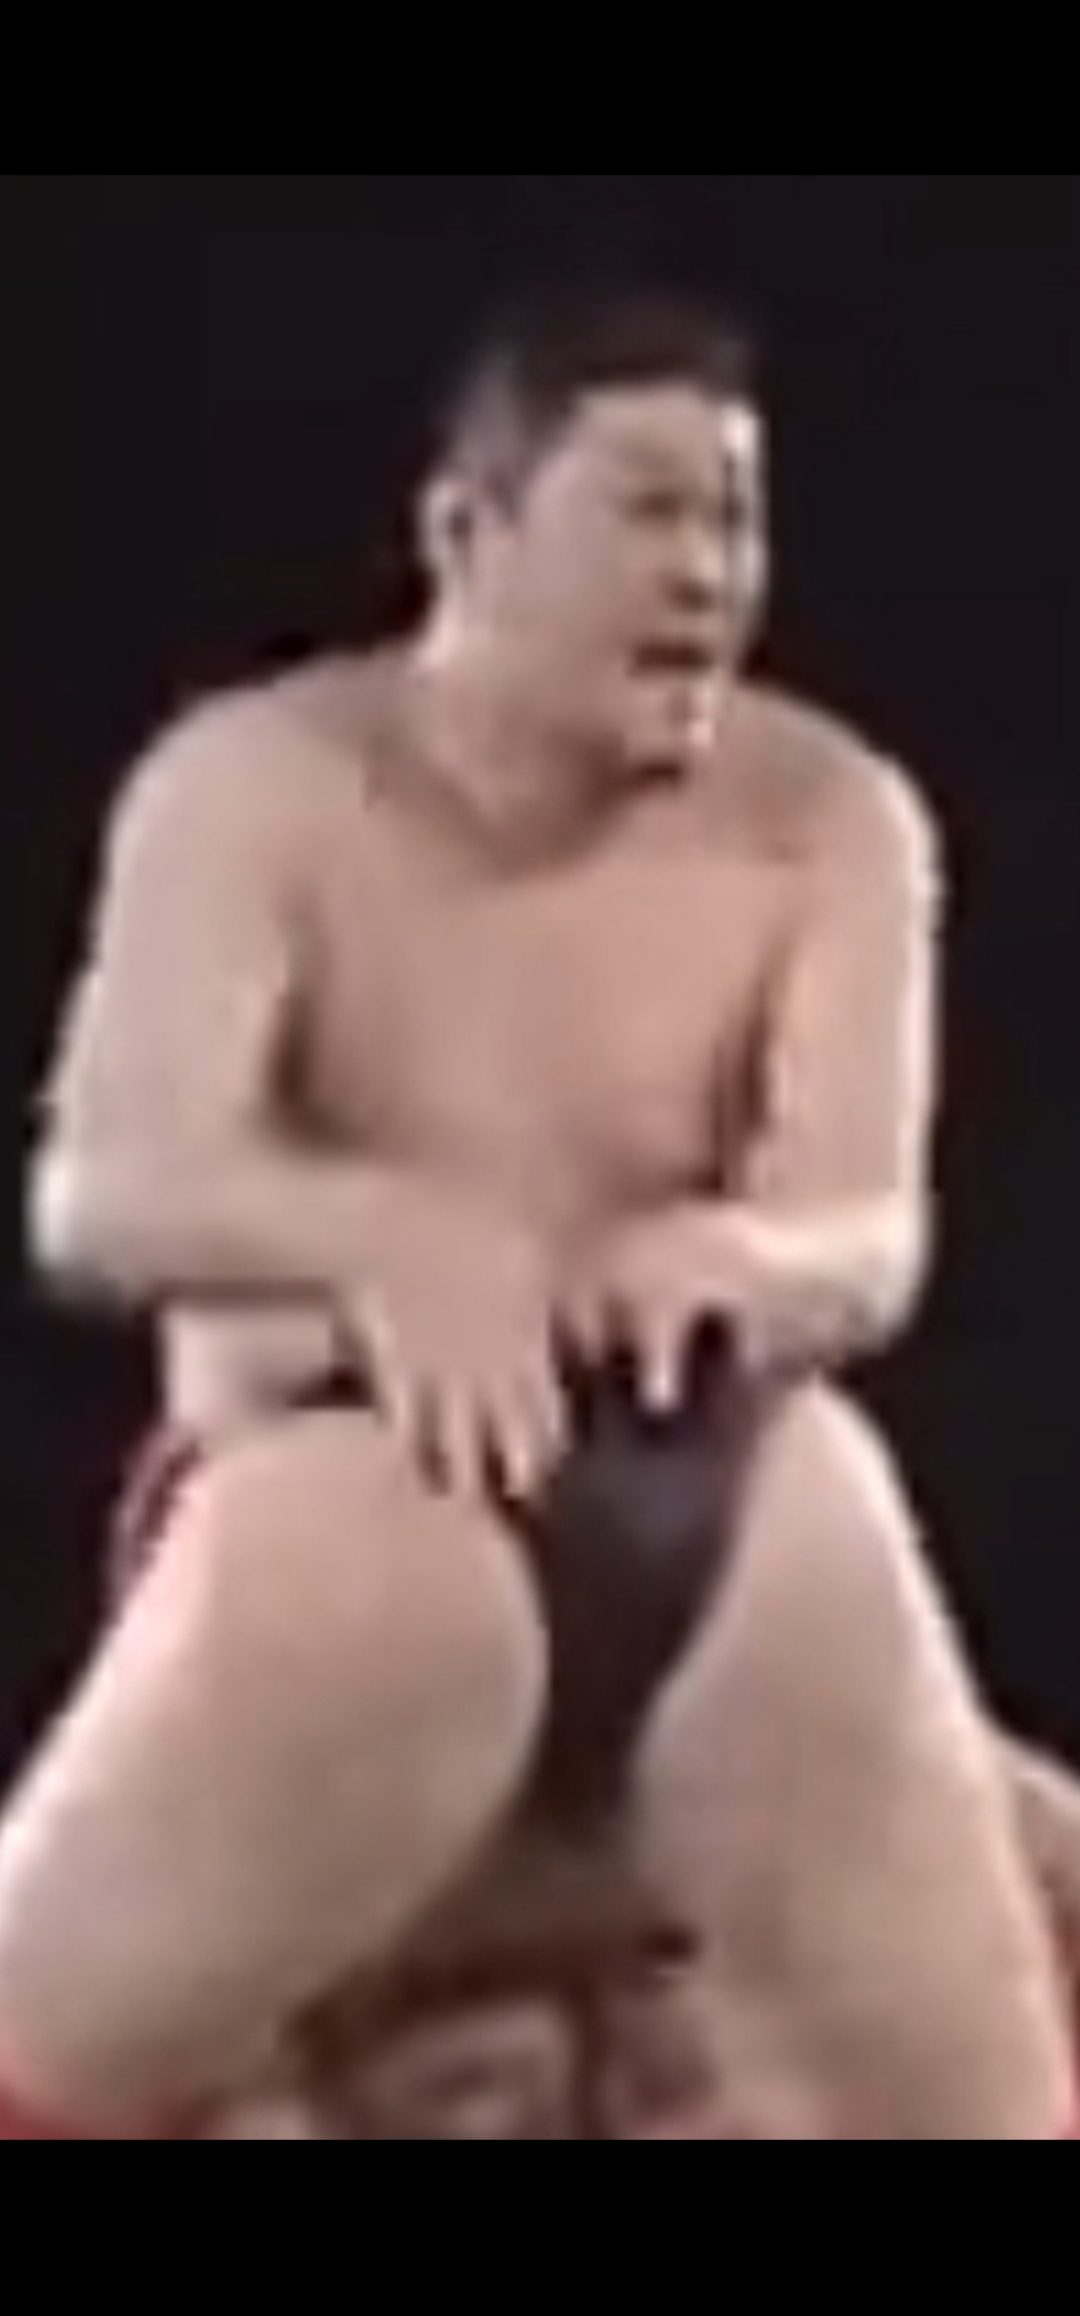 A Wrestler receives a spank